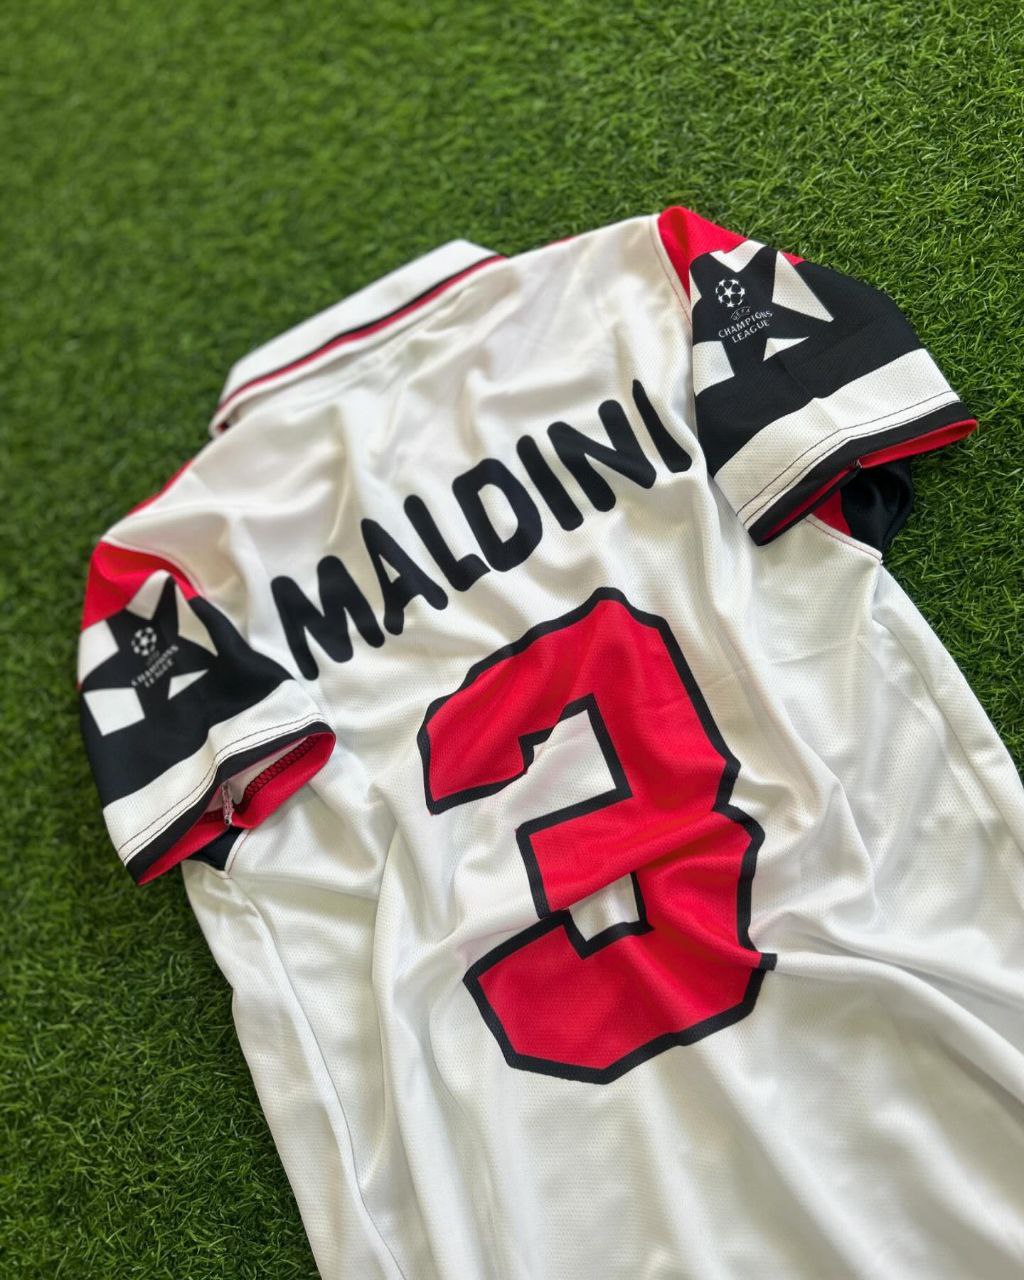 Paolo Maldini AC Milan Retro Jersey